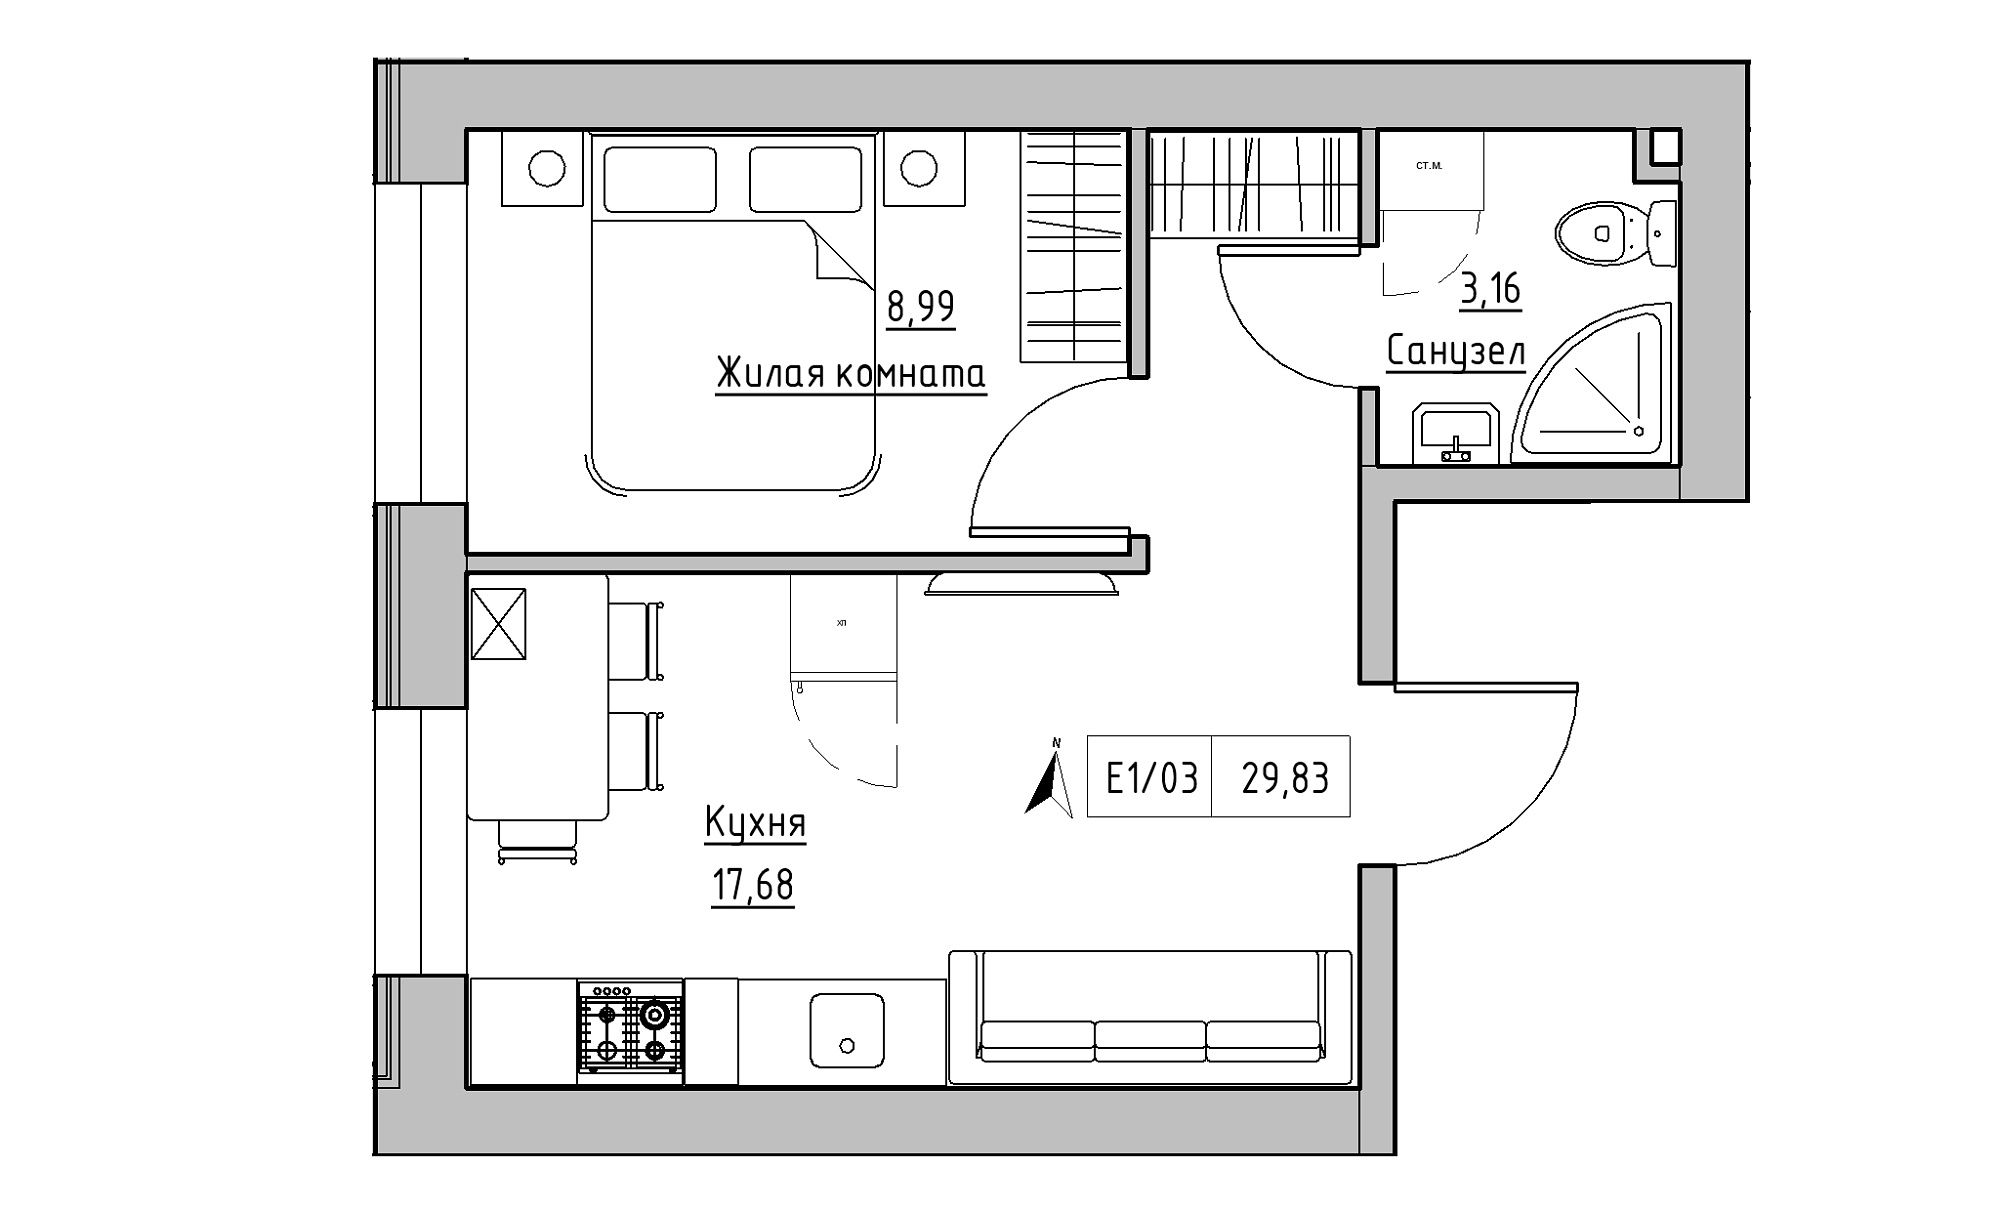 Планування 1-к квартира площею 29.83м2, KS-015-01/0003.